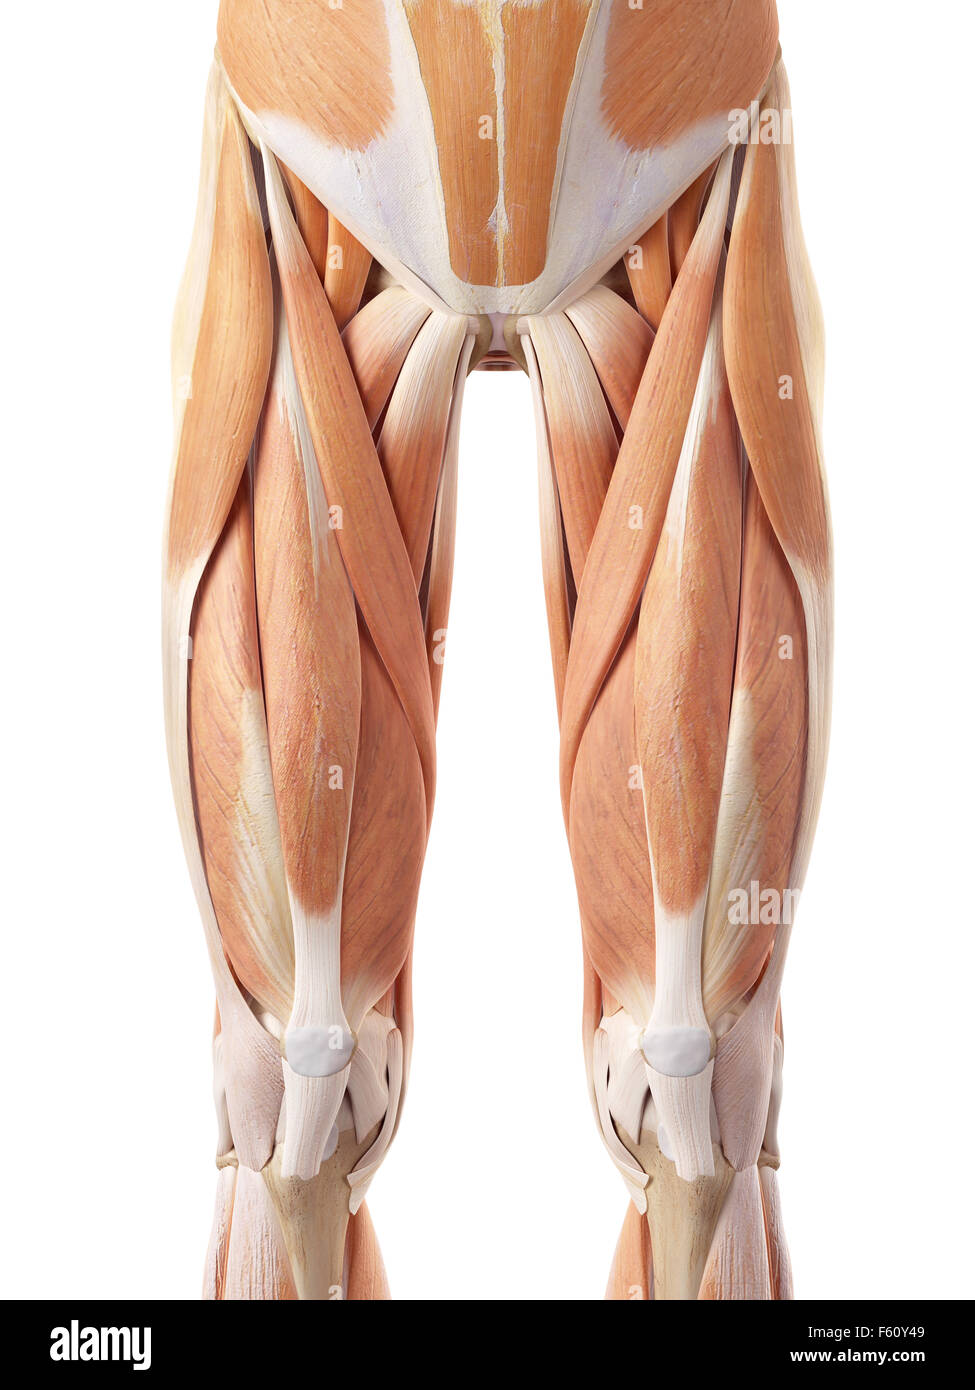 Dal punto di vista medico illustrazione accurata della sezione anteriore della muscolatura delle gambe Foto Stock